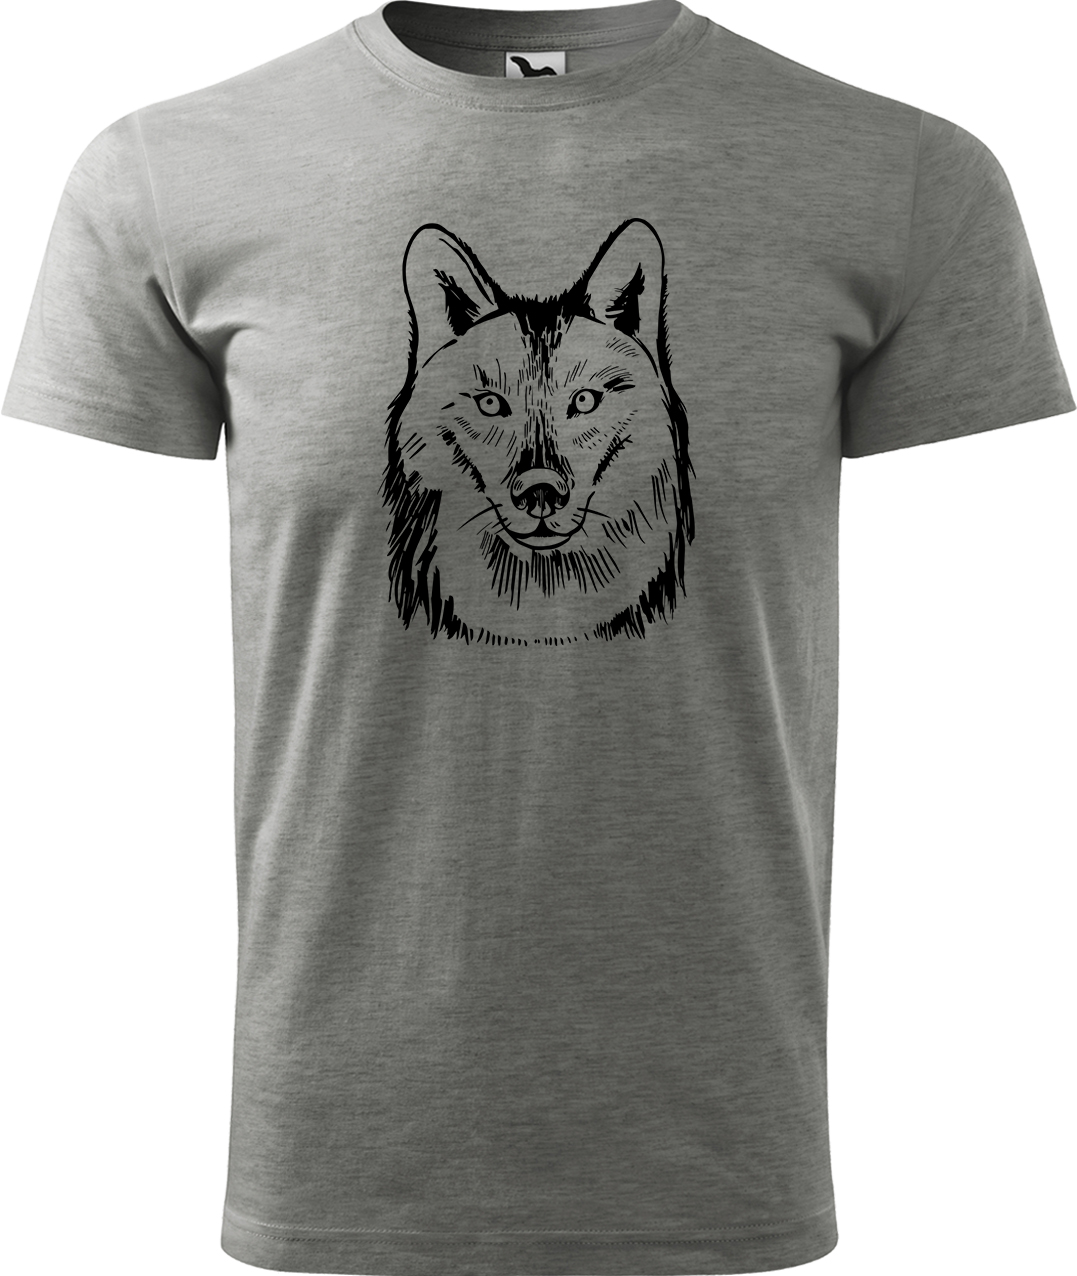 Pánské tričko s vlkem - Kresba vlka Velikost: S, Barva: Tmavě šedý melír (12), Střih: pánský